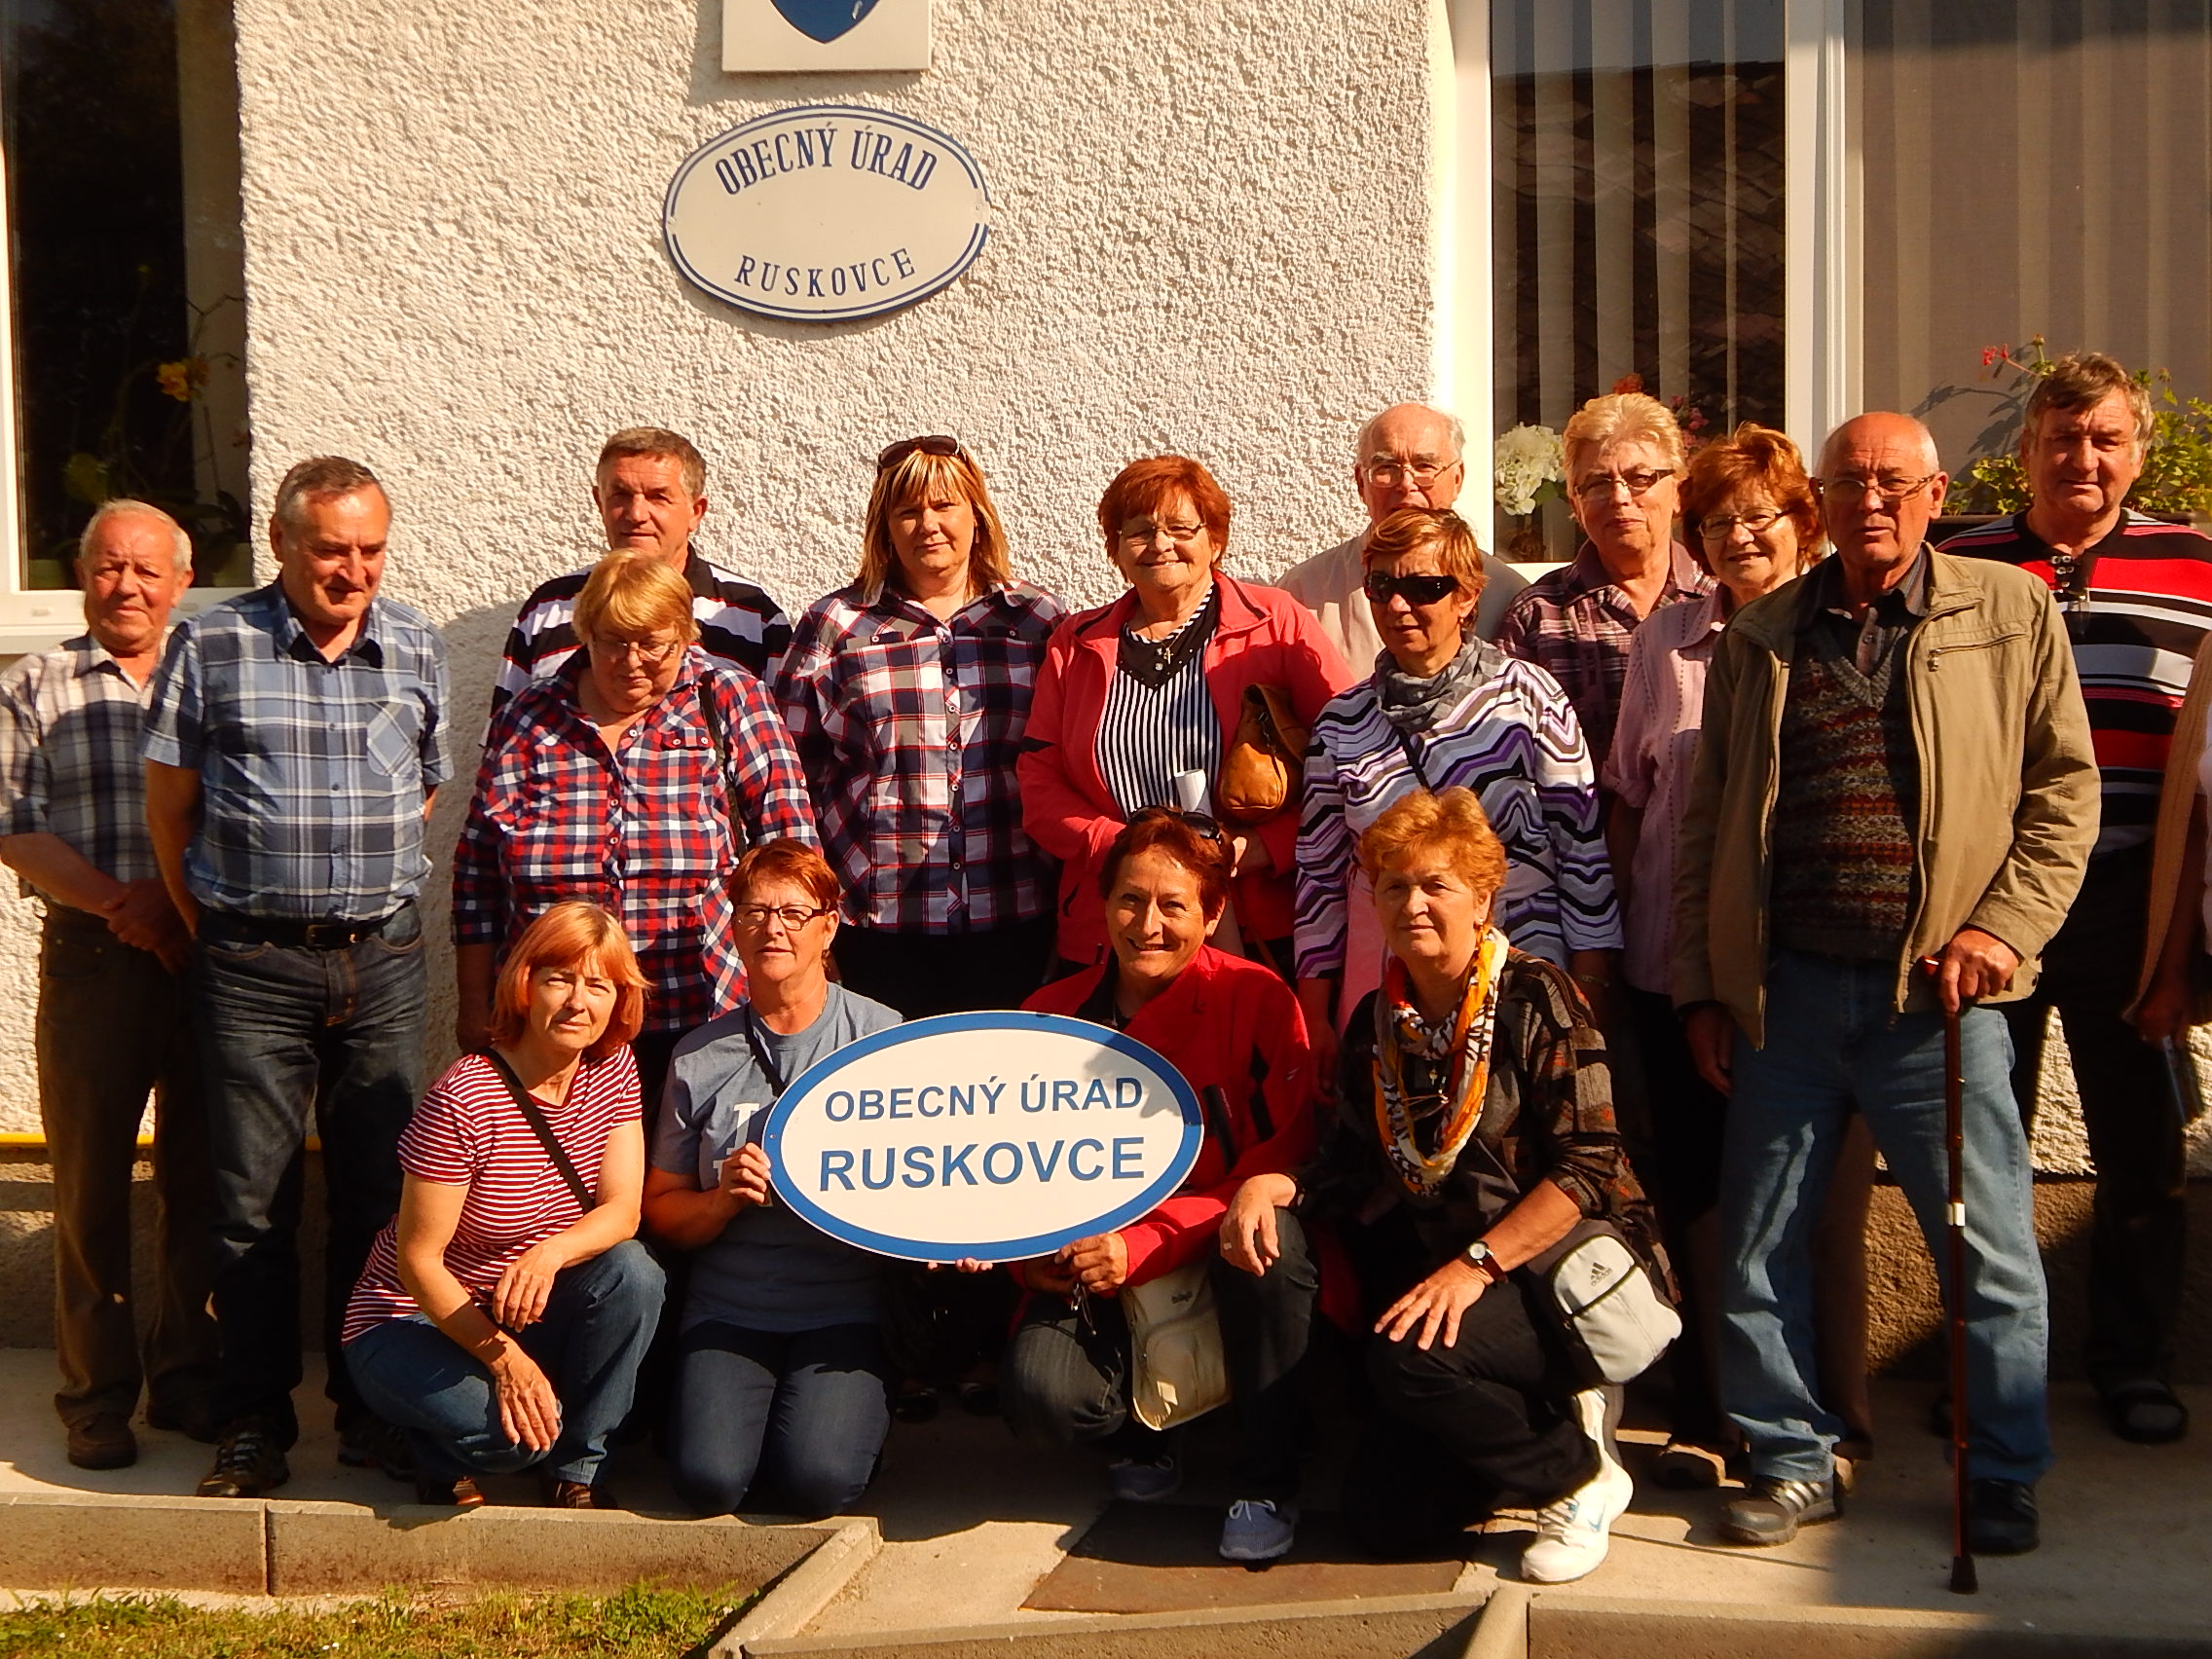   Navšteva dôchodcov v obci Ruskovce pri Bratislave